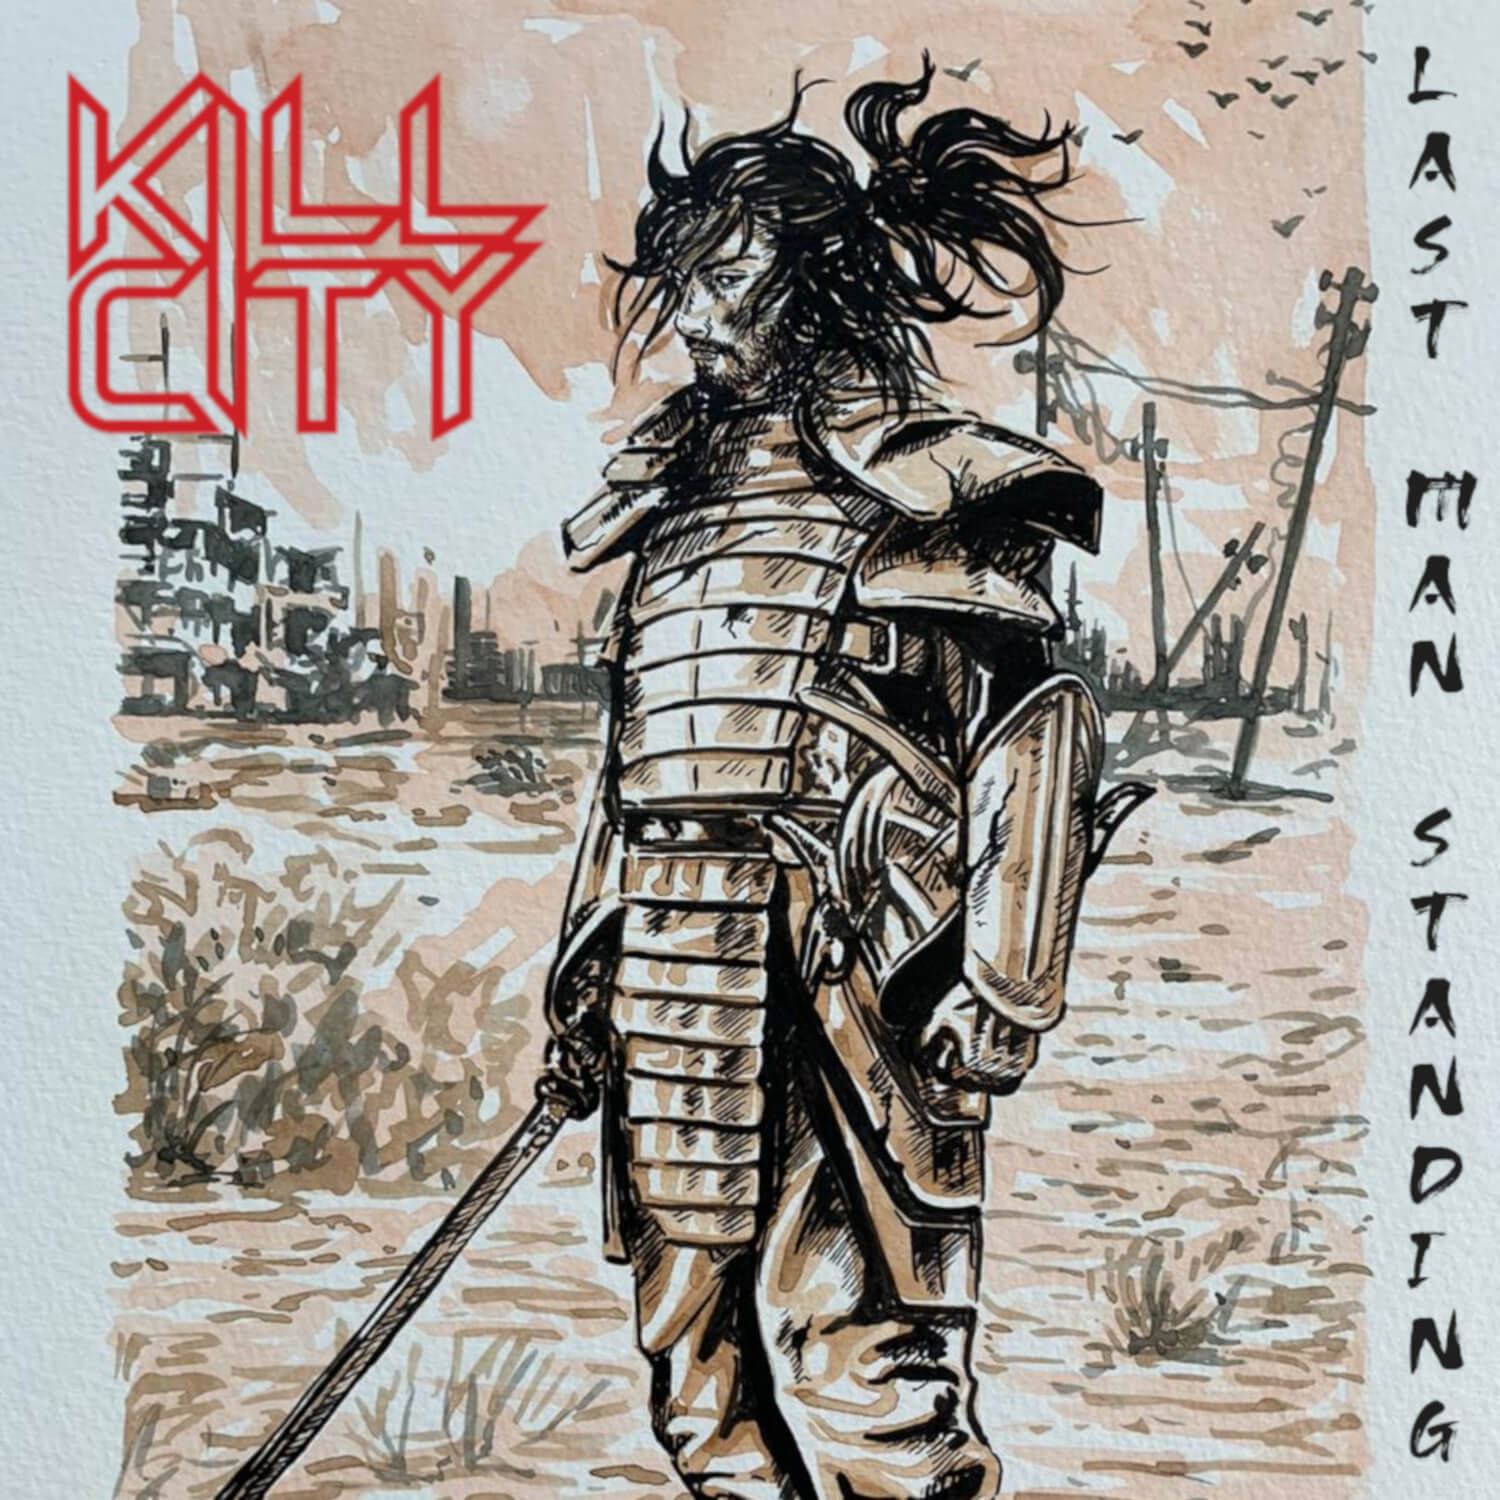 Kill City